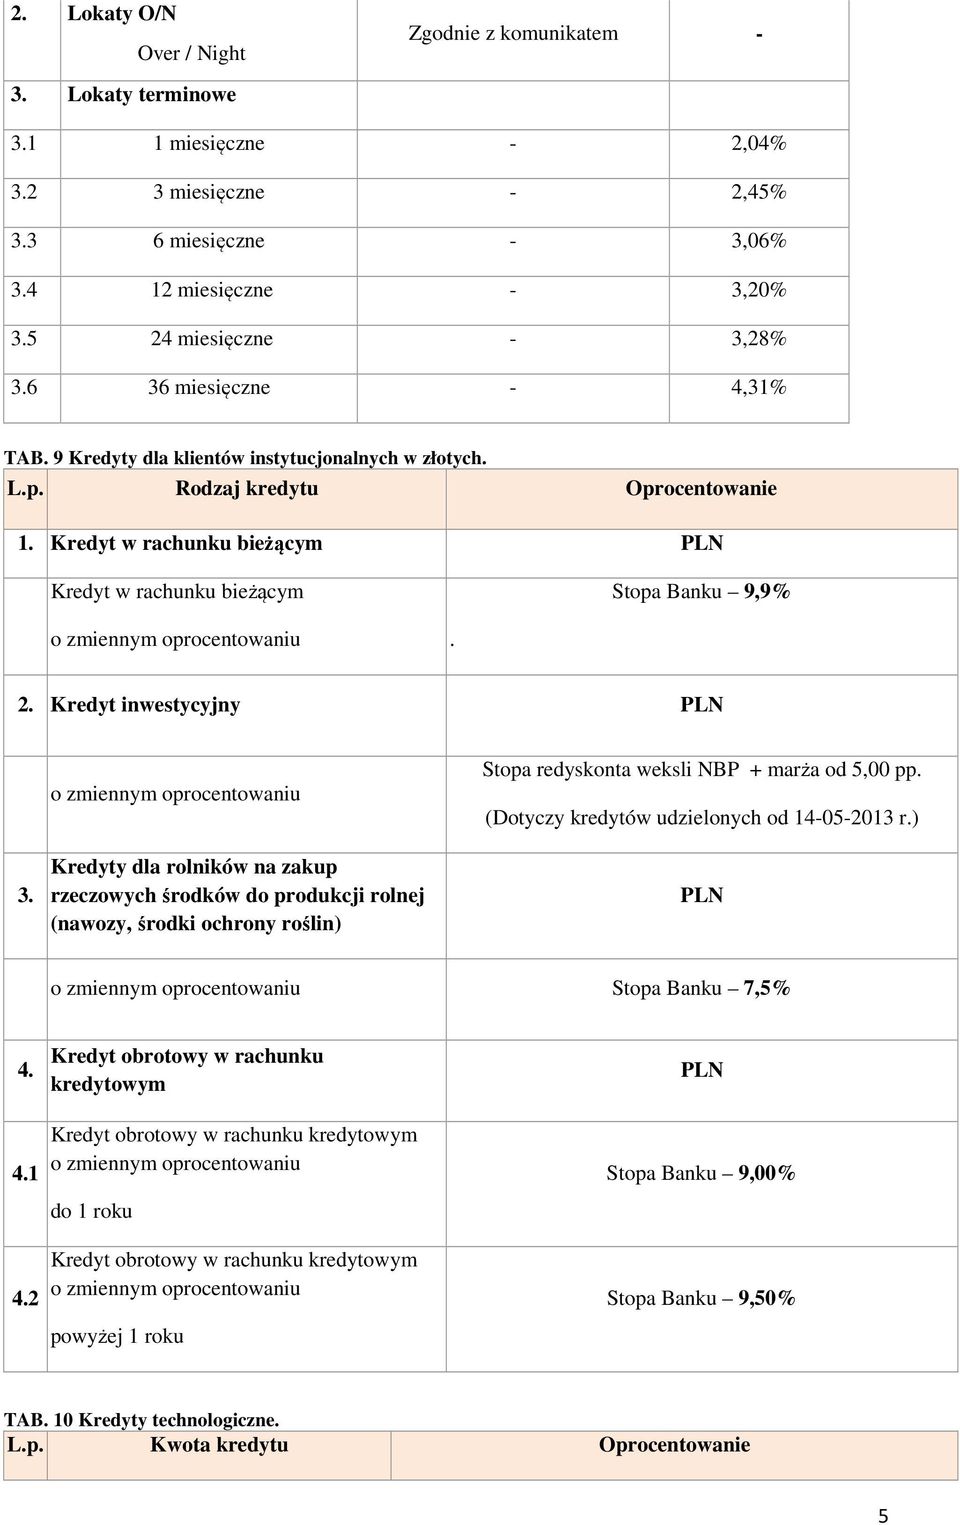 Kredyt inwestycyjny PLN 3. Kredyty dla rolników na zakup rzeczowych środków do produkcji rolnej (nawozy, środki ochrony roślin) NBP + marża od 5,00 pp. (Dotyczy kredytów udzielonych od 14-05-2013 r.